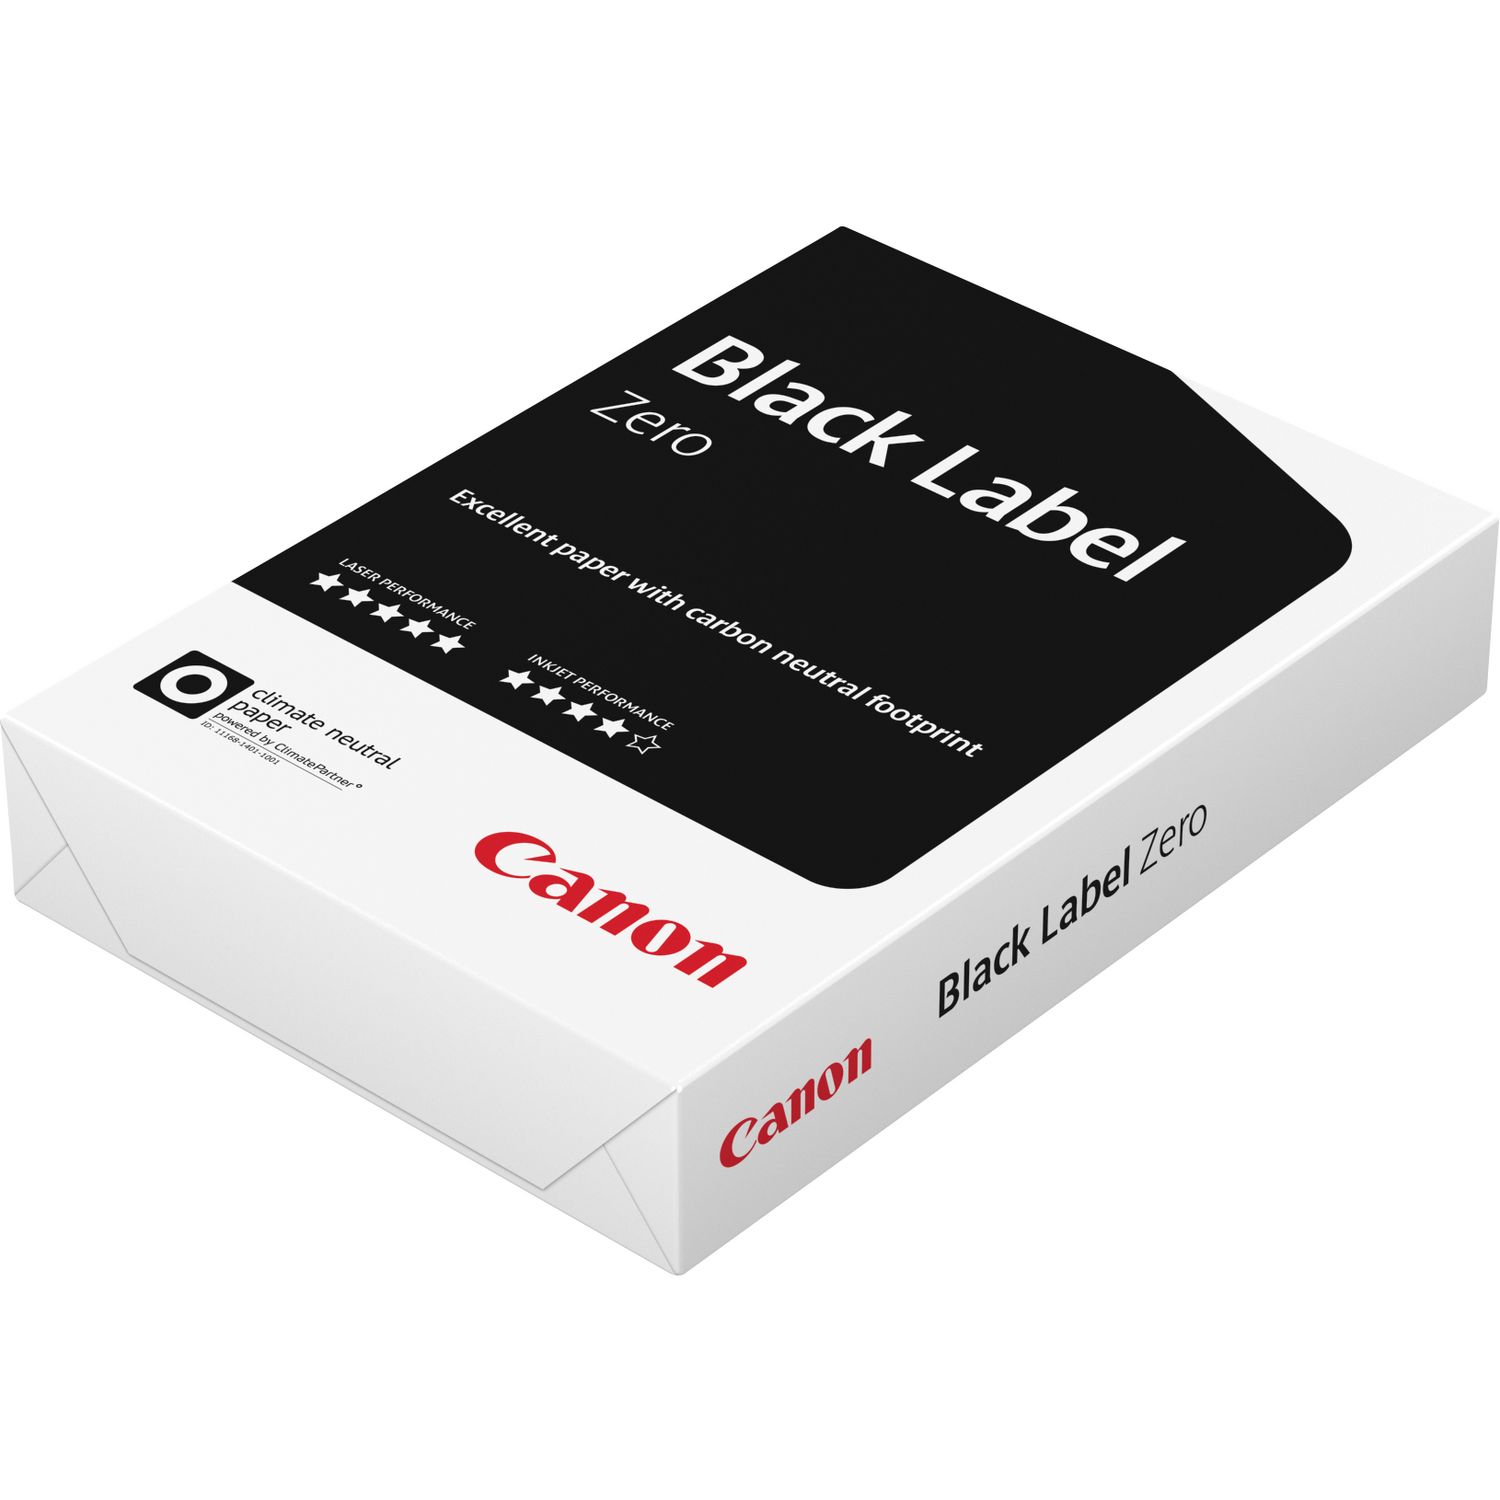 Canon Black Label Zero FSC A4 papier - 500 vel — Canon Nederland Store